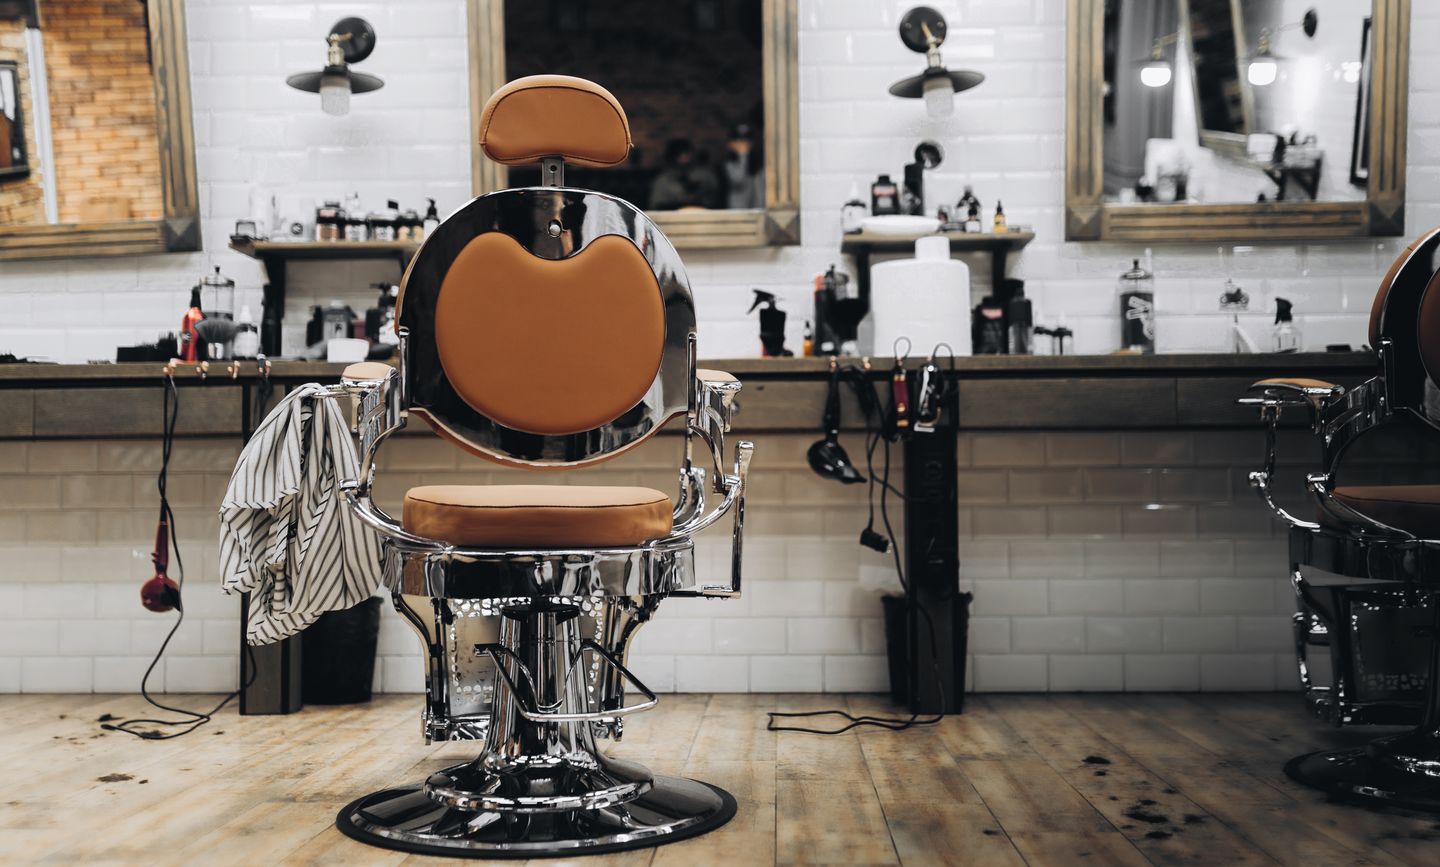 Kamu bisa membeli lisensi yang sudah ada atau membangun bisnis franchise barbershop sendiri.